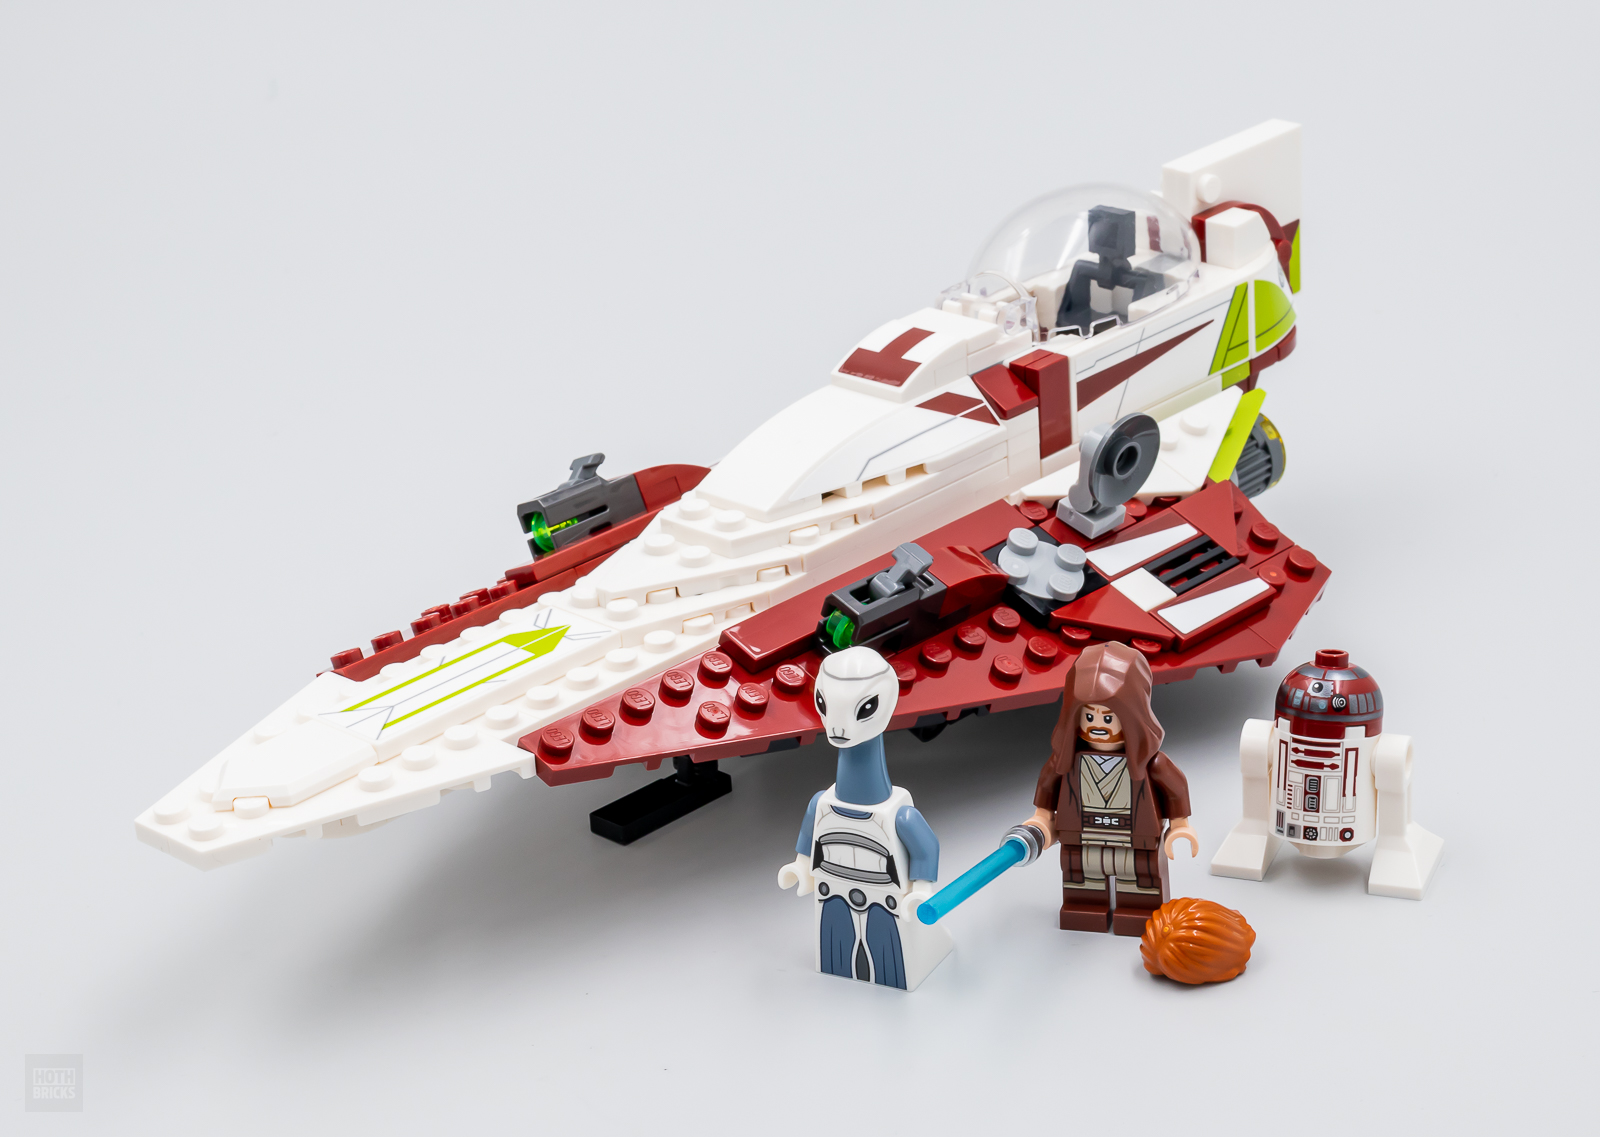 Çox tez sınaqdan keçirildi: LEGO Star Wars 75333 Obi-Wan Kenobinin Jedi Starfighter